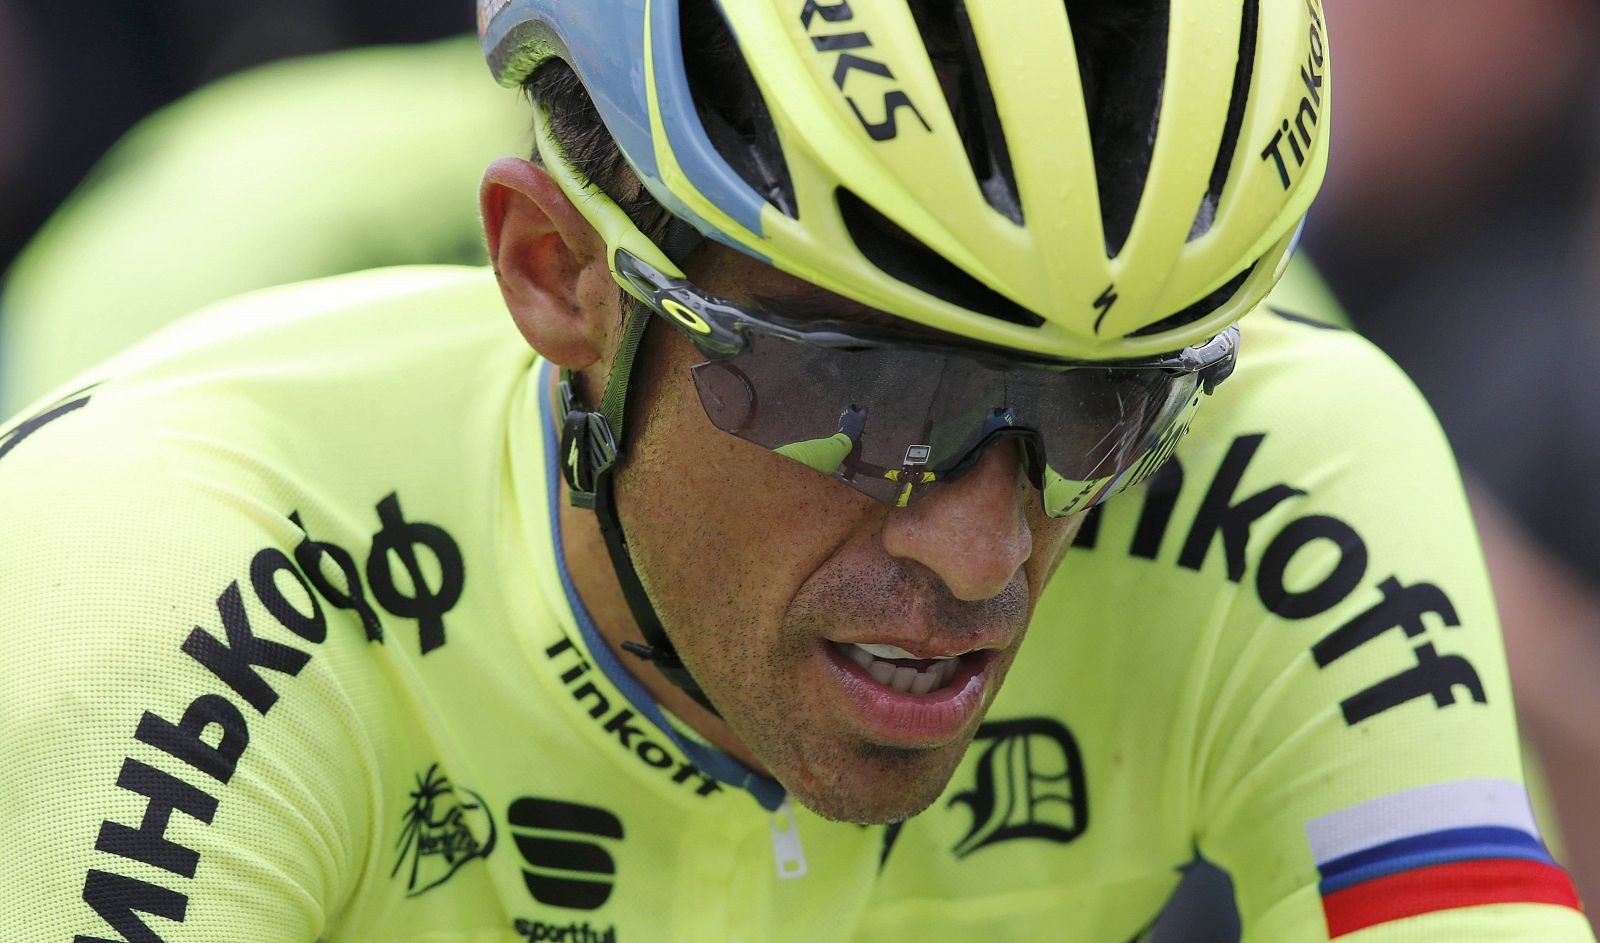 Imagen de Alberto Contador (Tinkoff) durante la etapa 2 del Tour.